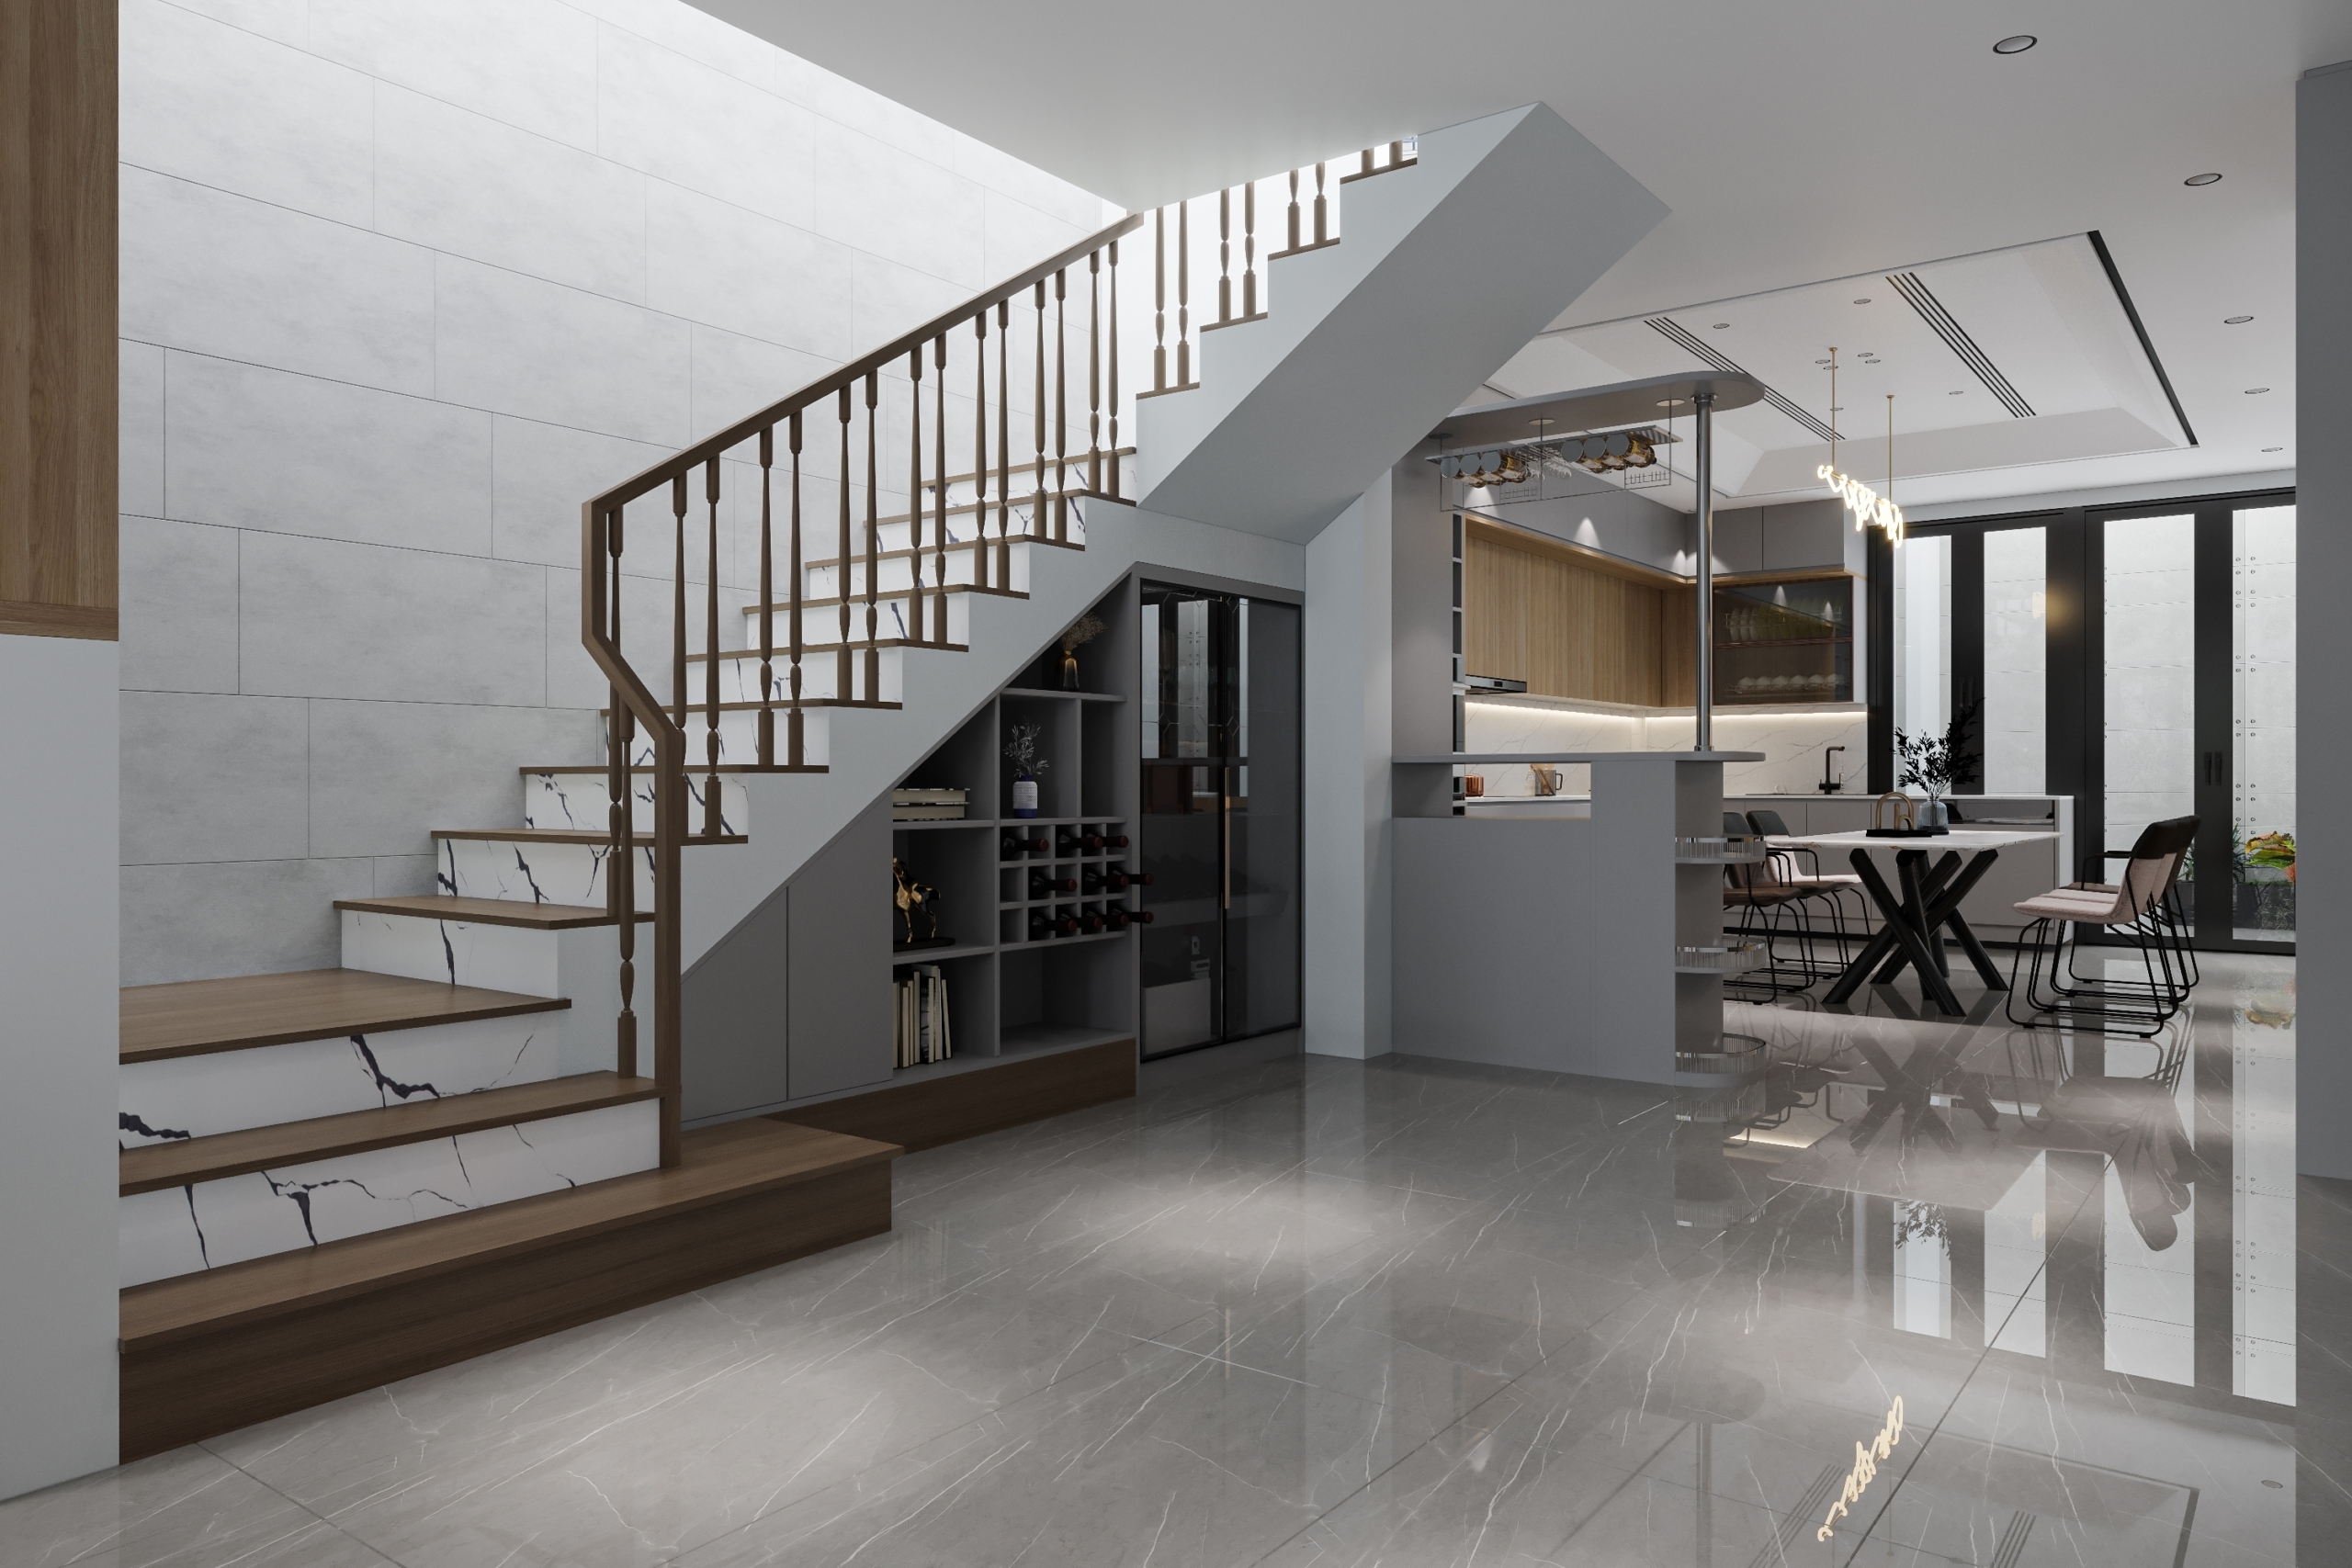 Thêm một quầy bar dưới cầu thang có thể làm tăng không gian cho phòng khách. (Ảnh: Shutterstock)